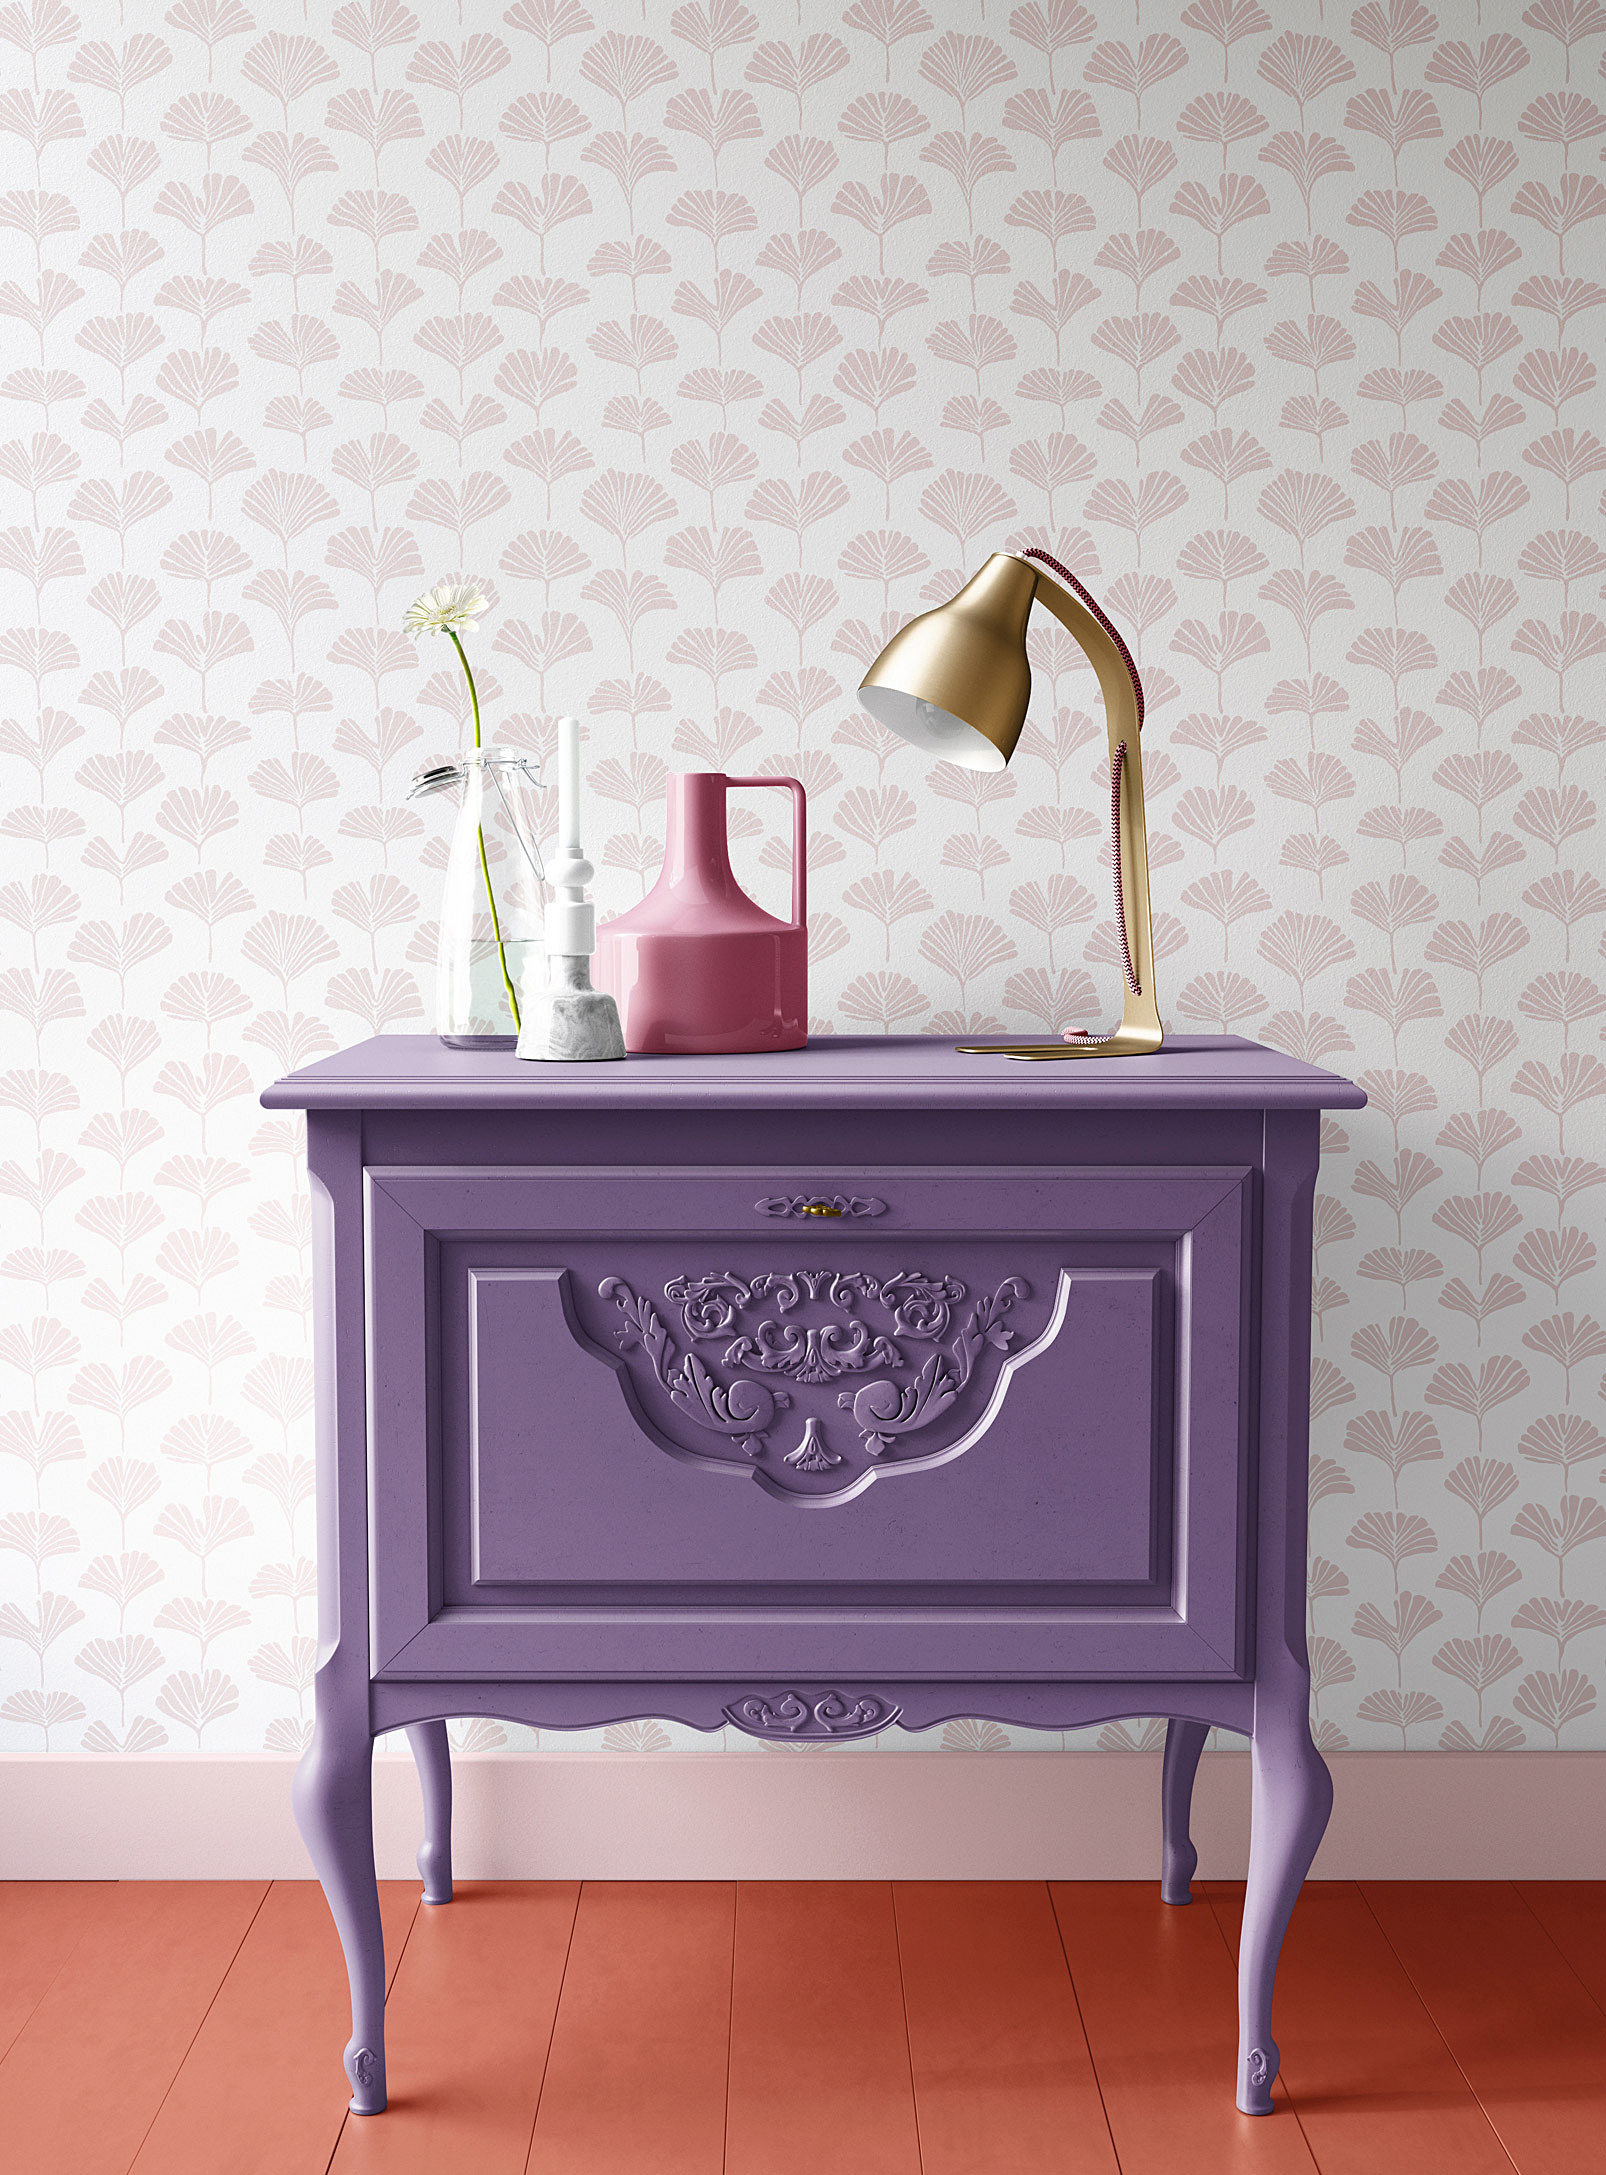 Walls Of Ivy Ginkgo Silkscreened Wallpaper In Purple